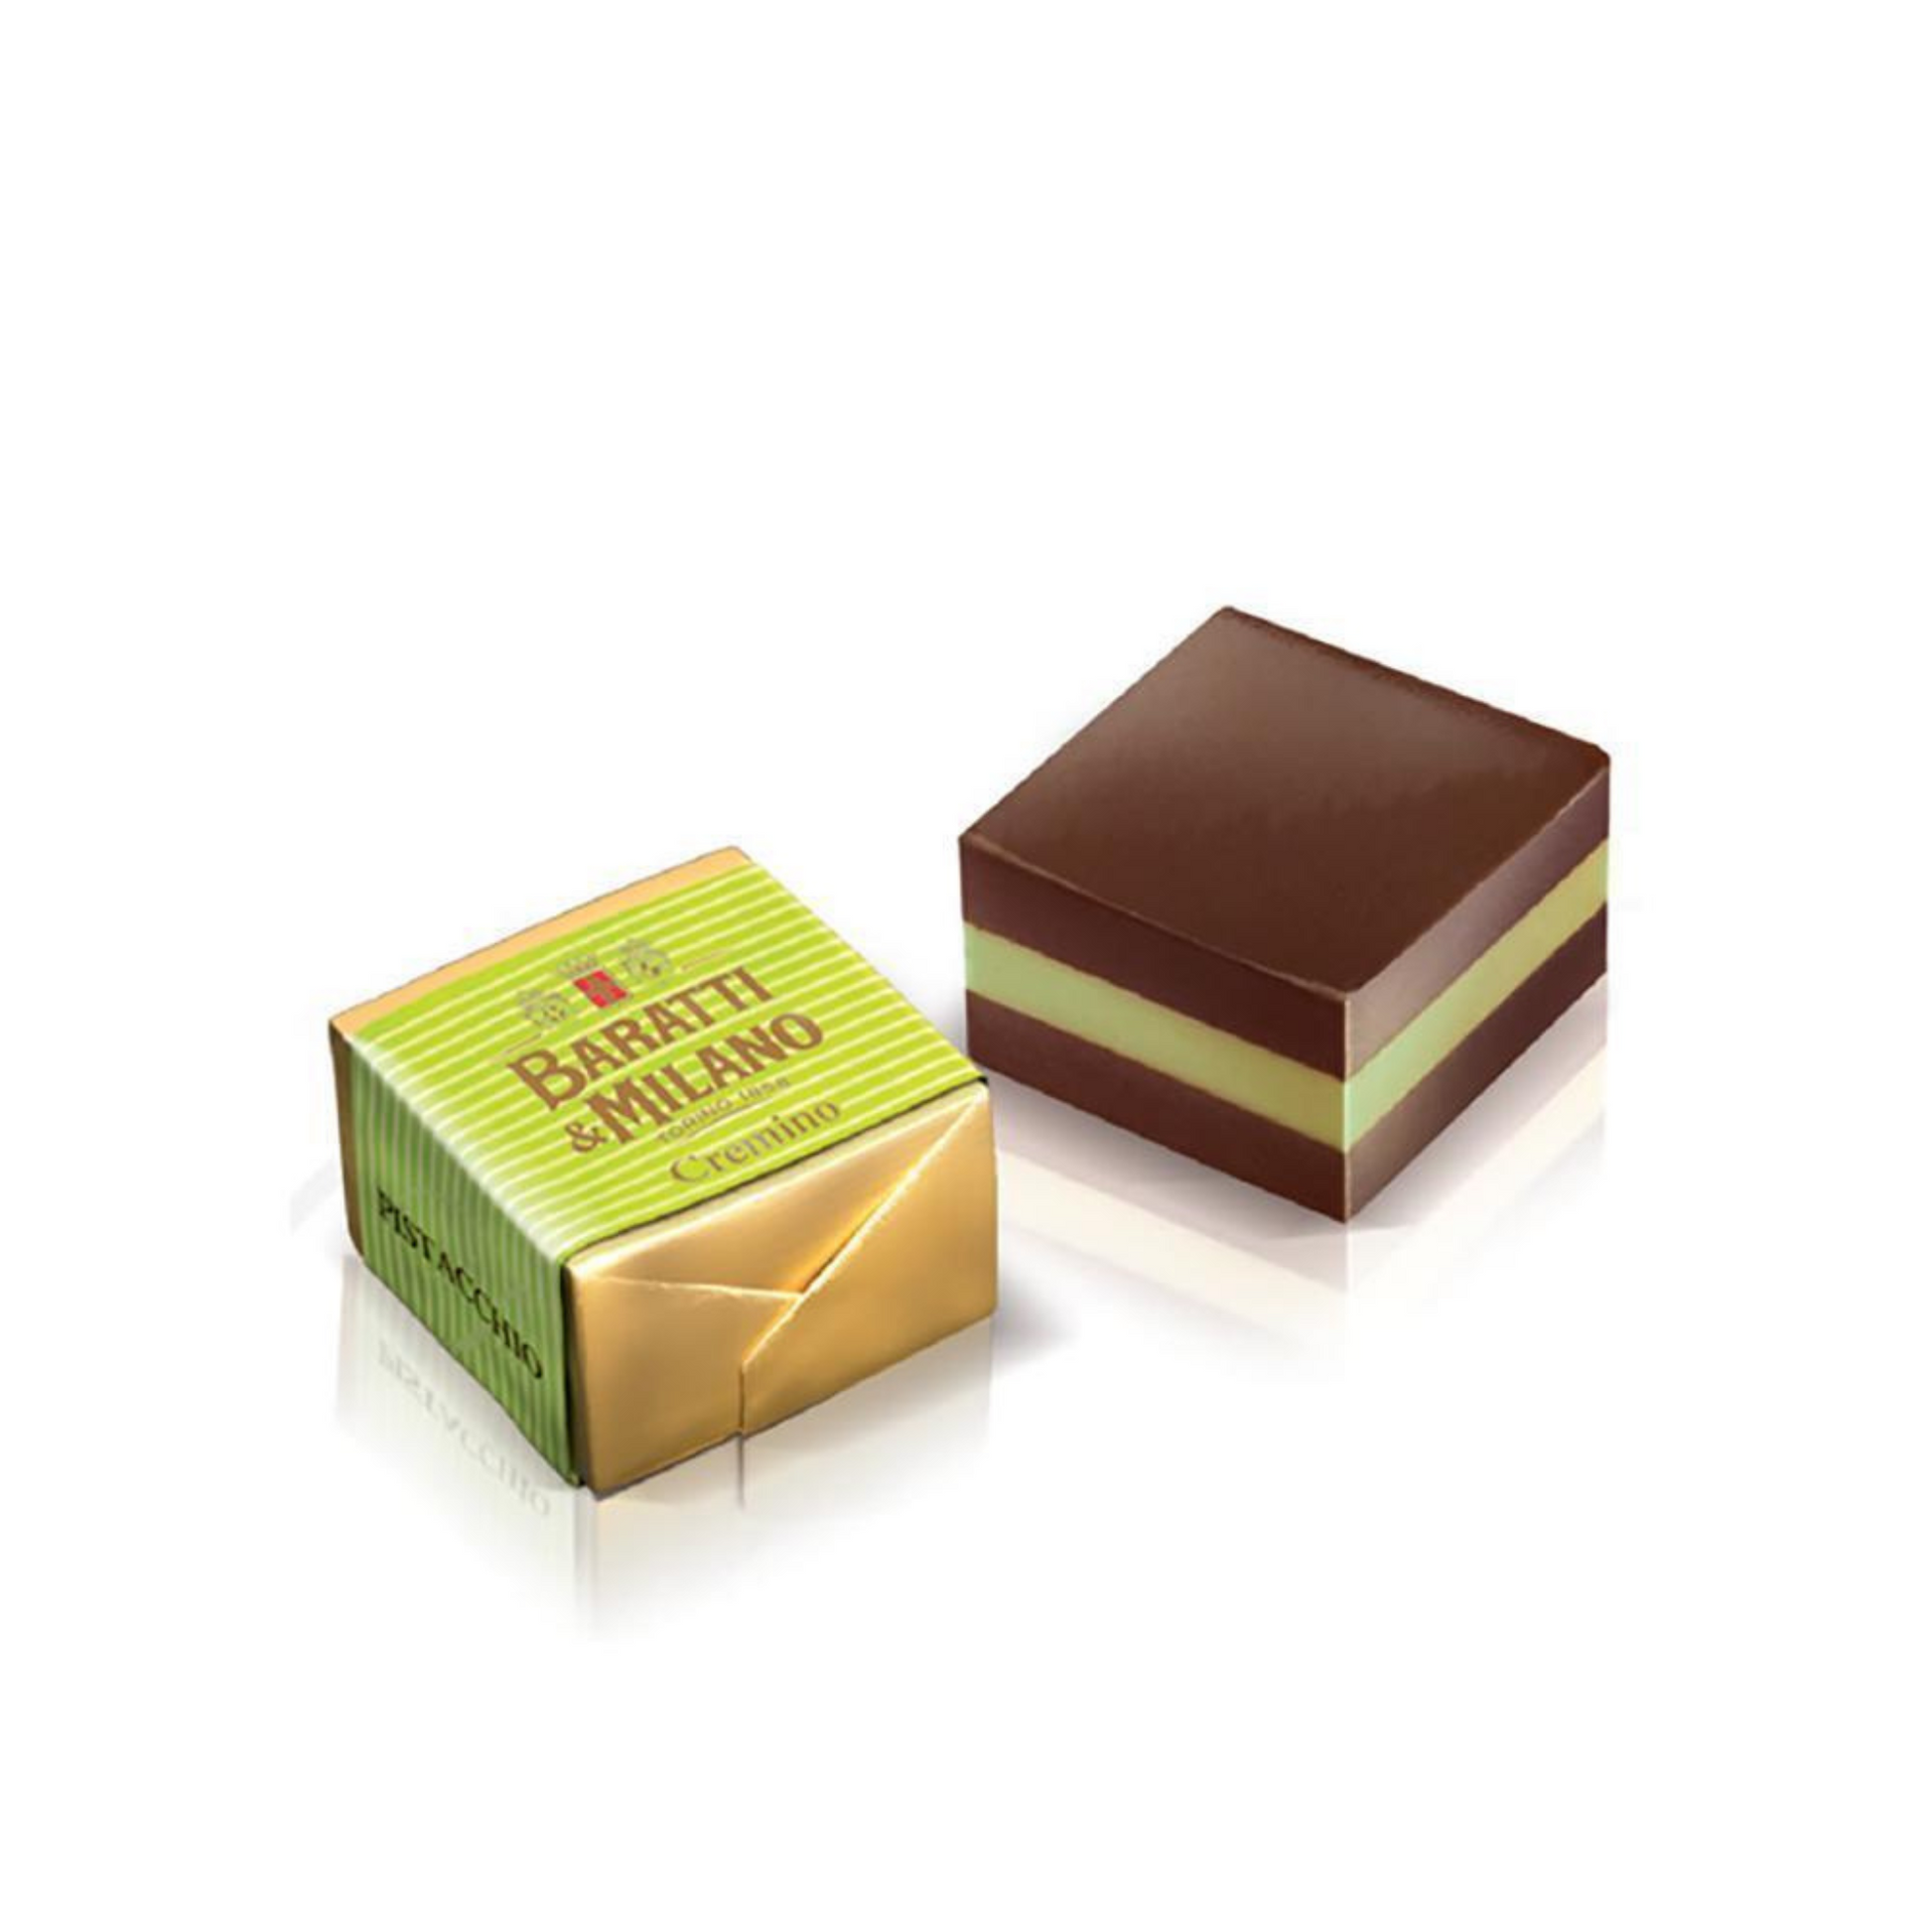 Cioccolatini Personalizzati Per il Tuo Evento - Dolmarr Cioccolato